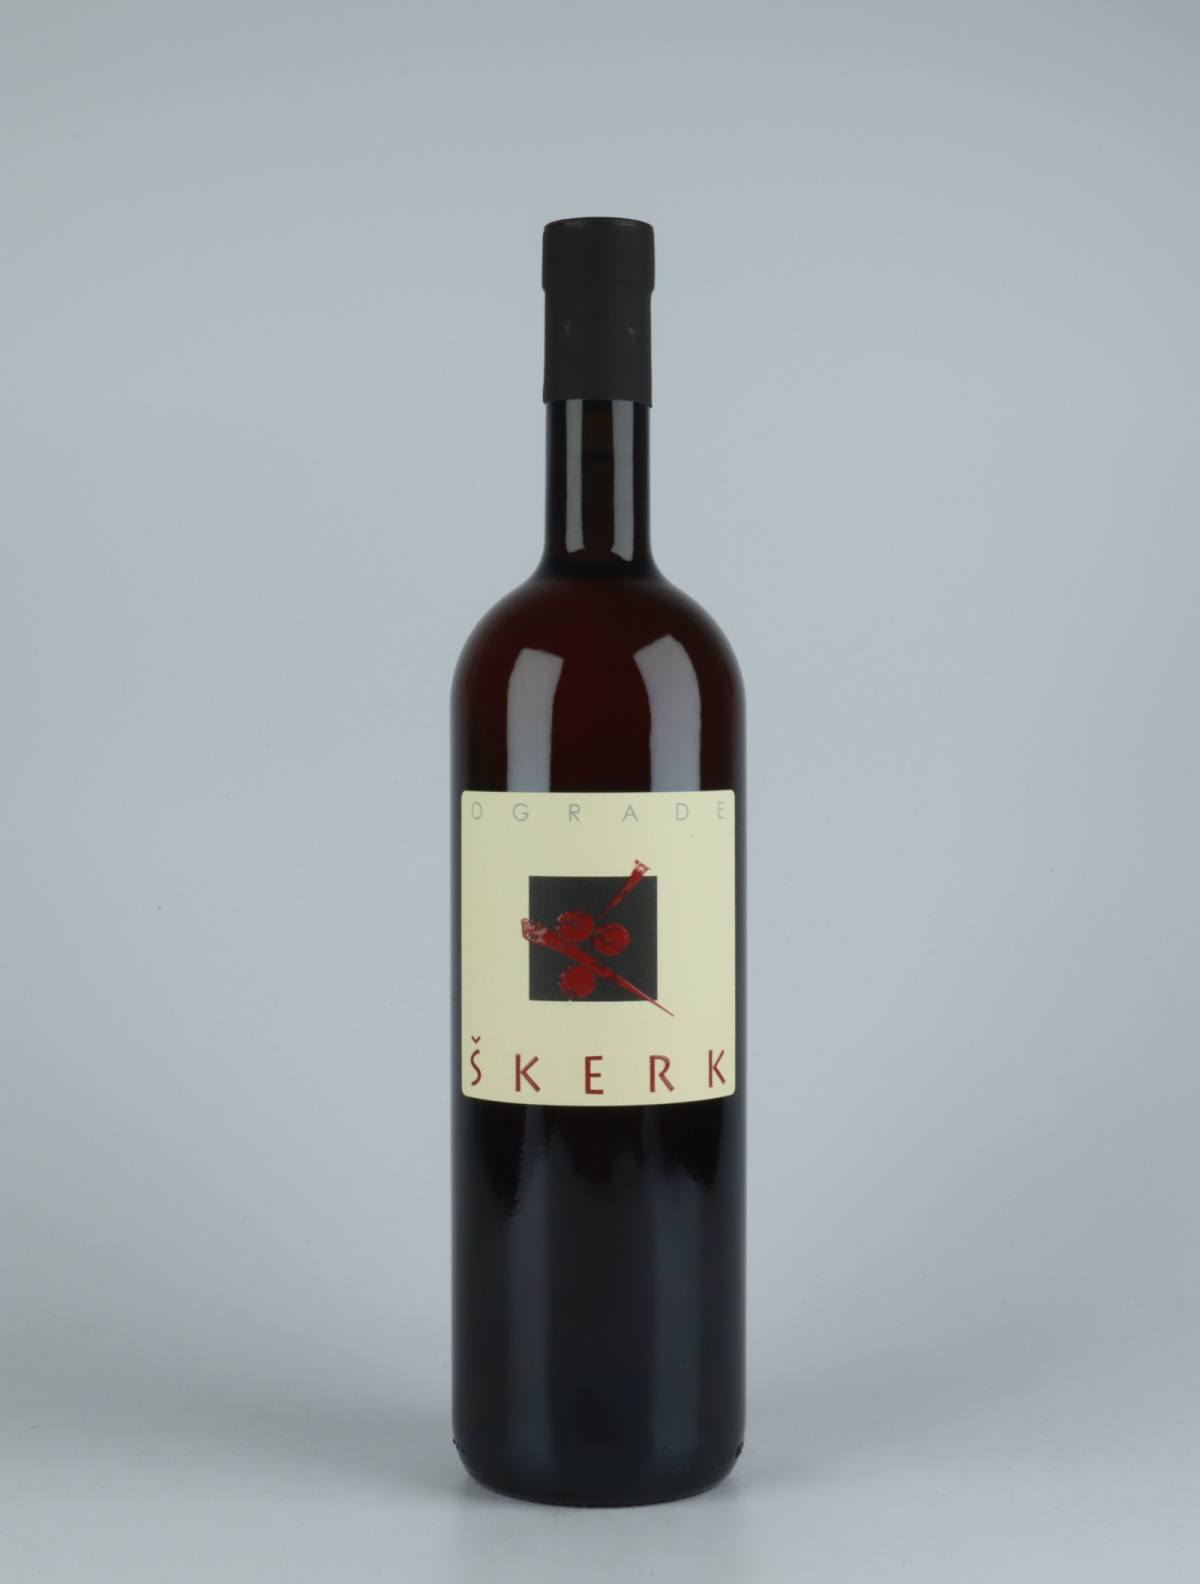 A bottle 2019 Ograde Orange wine from Skerk, Friuli in Italy